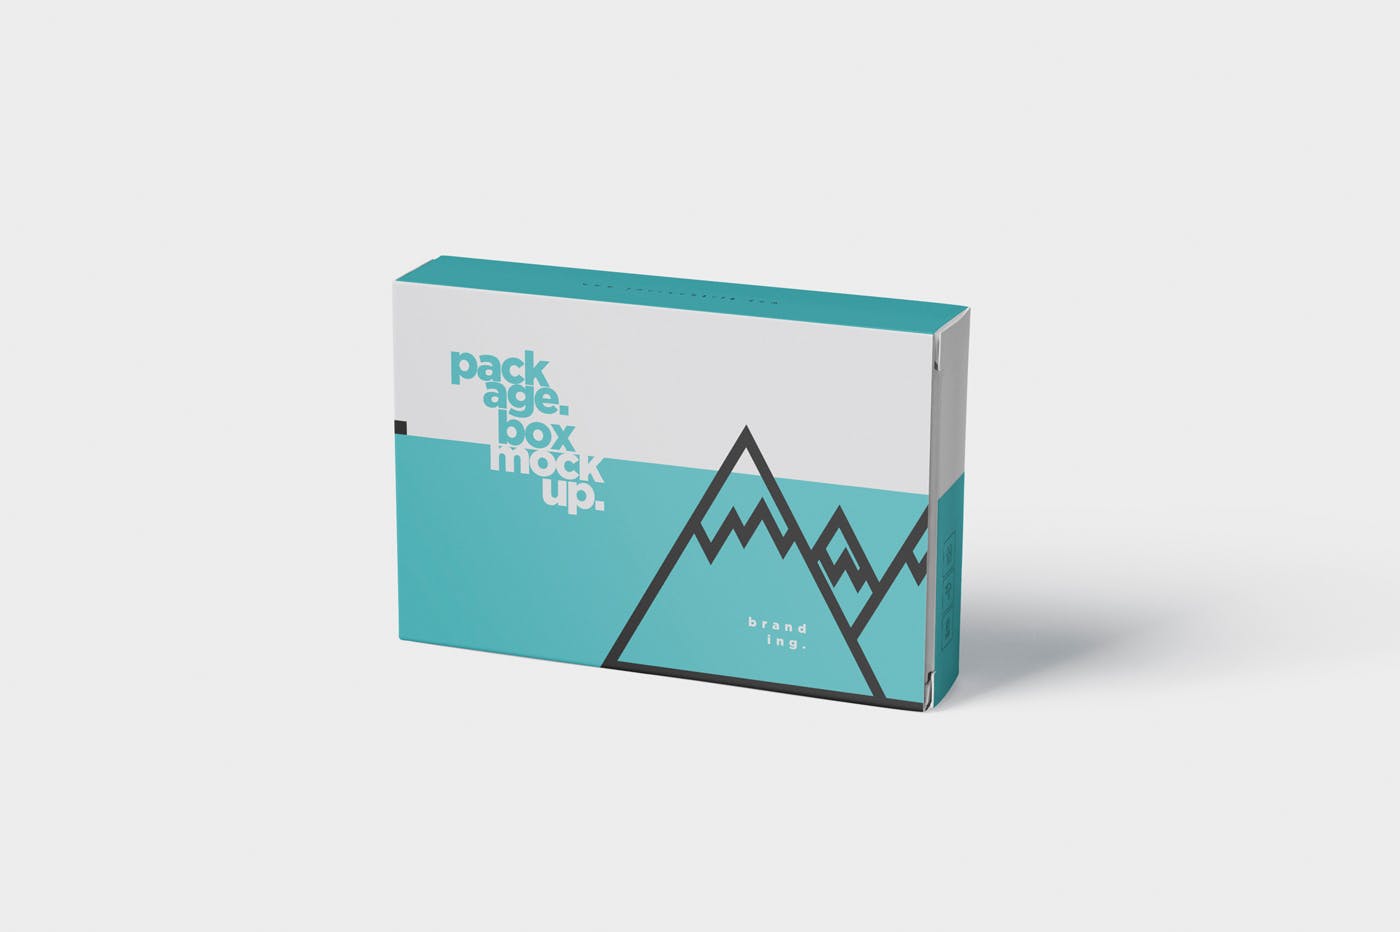 扑克牌大小扁平包装纸盒外观设计素材库精选模板 Package Box Mock-Up – Wide – Flat Rectangle Shape插图(5)